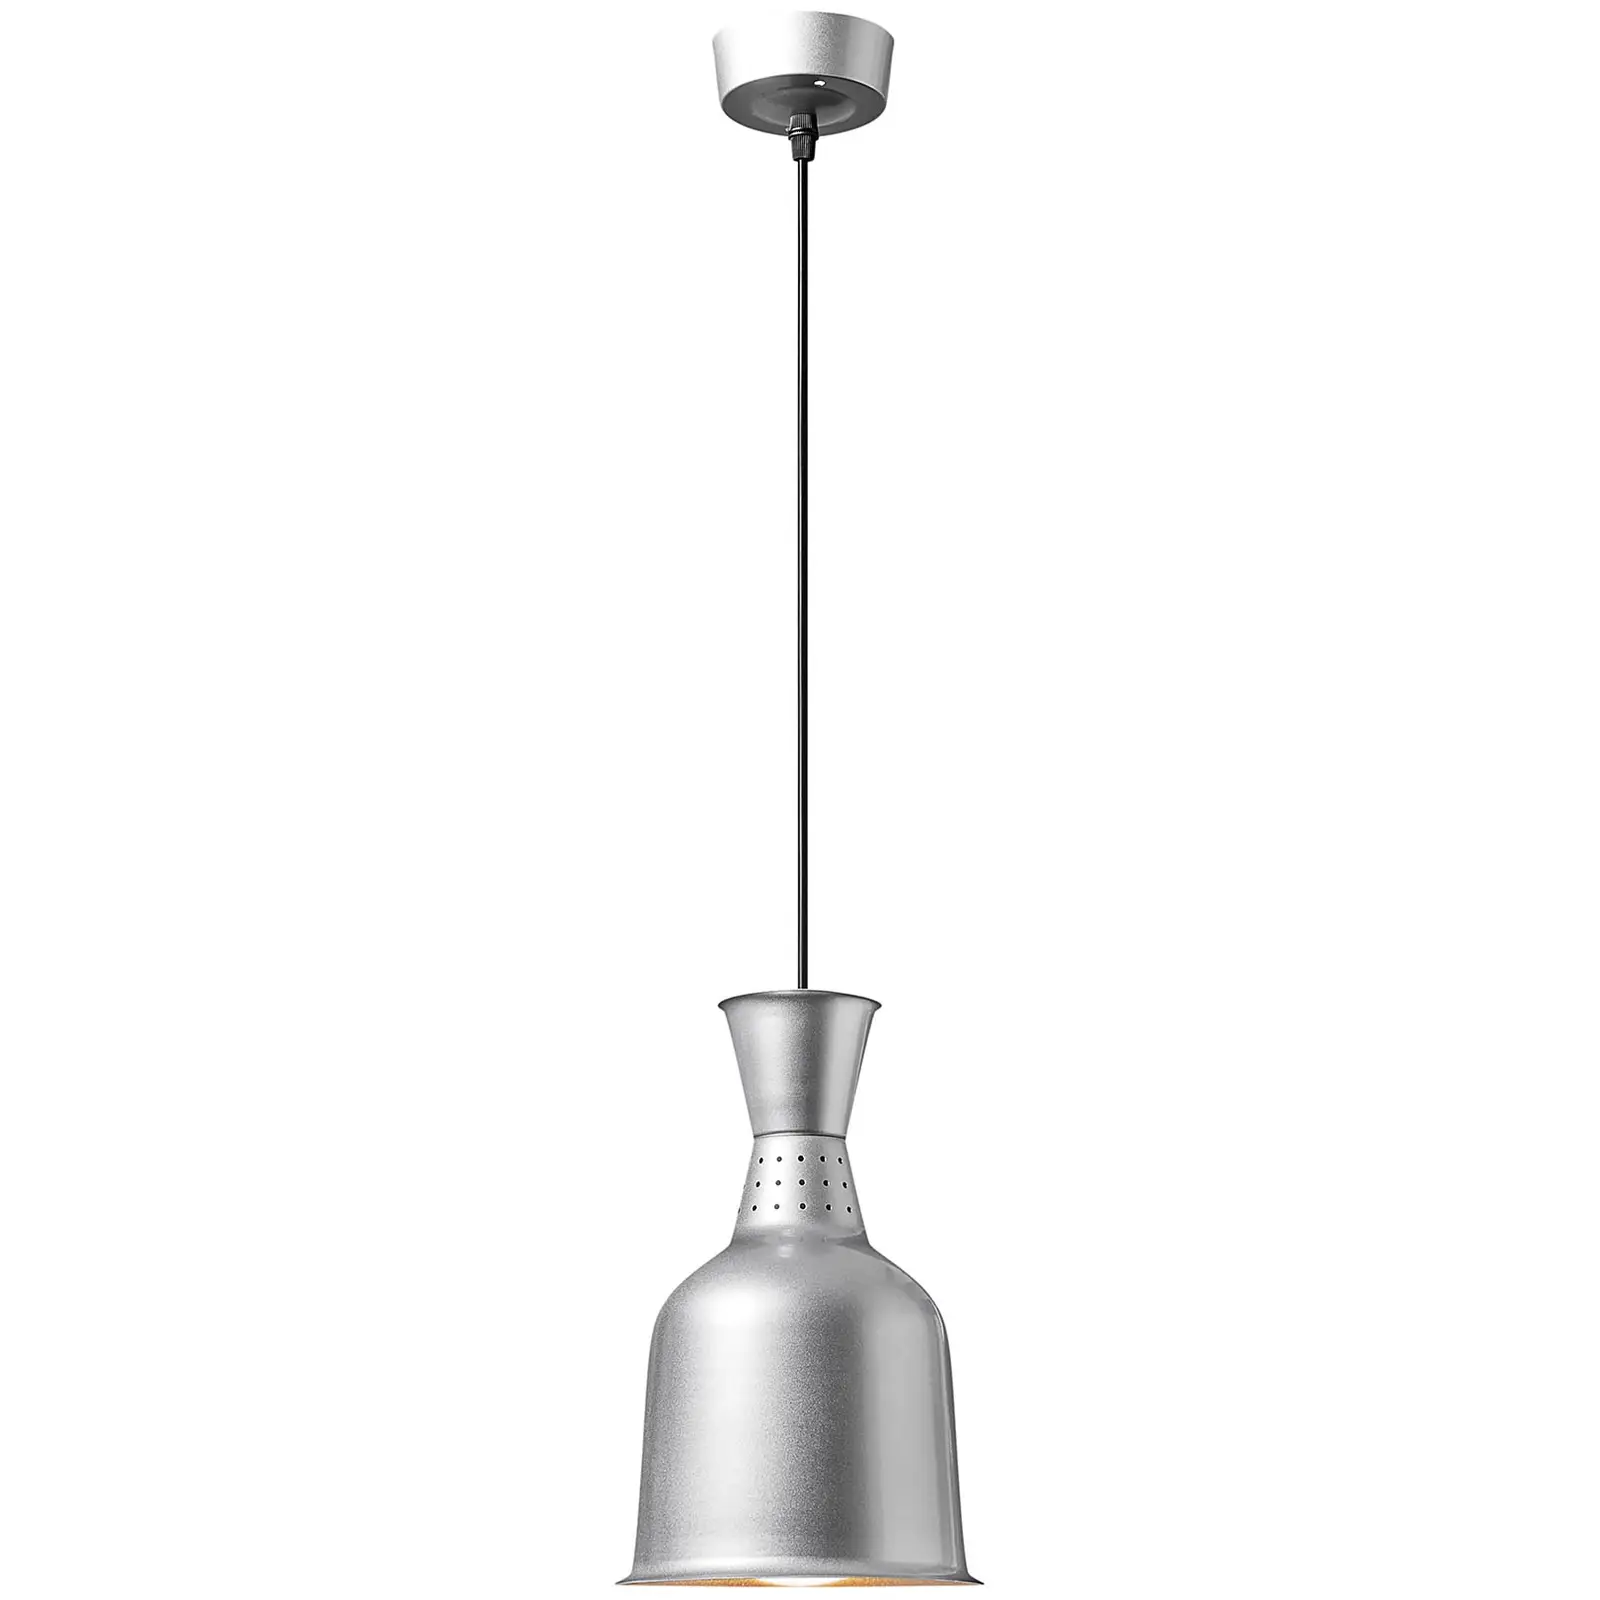 Lampada riscaldante - argento - 18.5 x 18.5 x 28.5 cm  - 